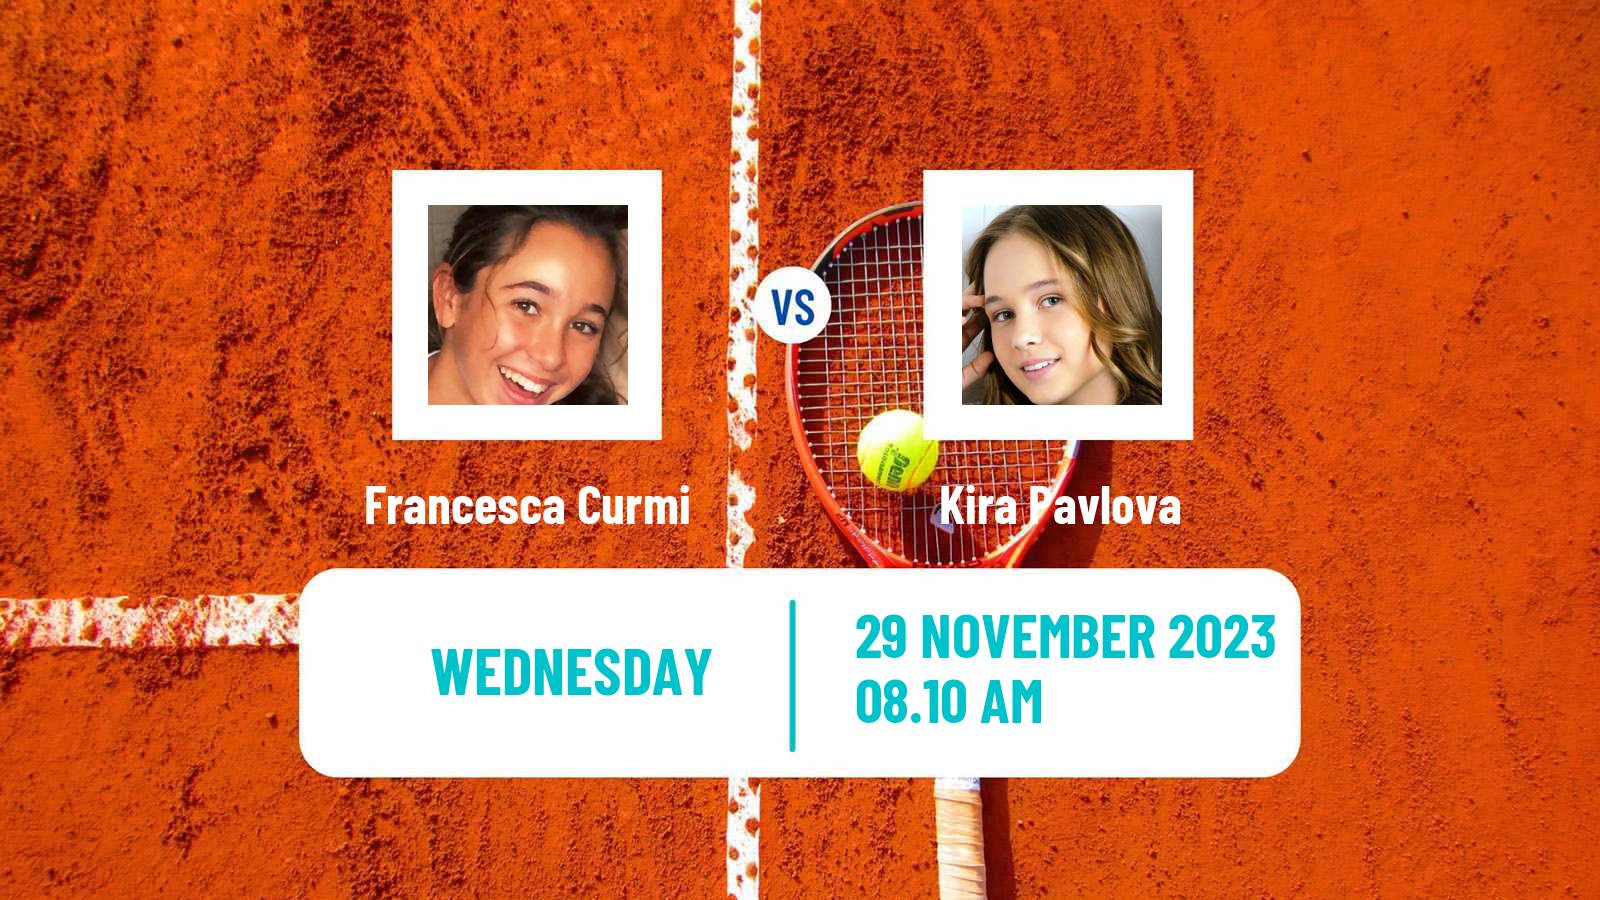 Tennis ITF W60 Trnava 3 Women Francesca Curmi - Kira Pavlova